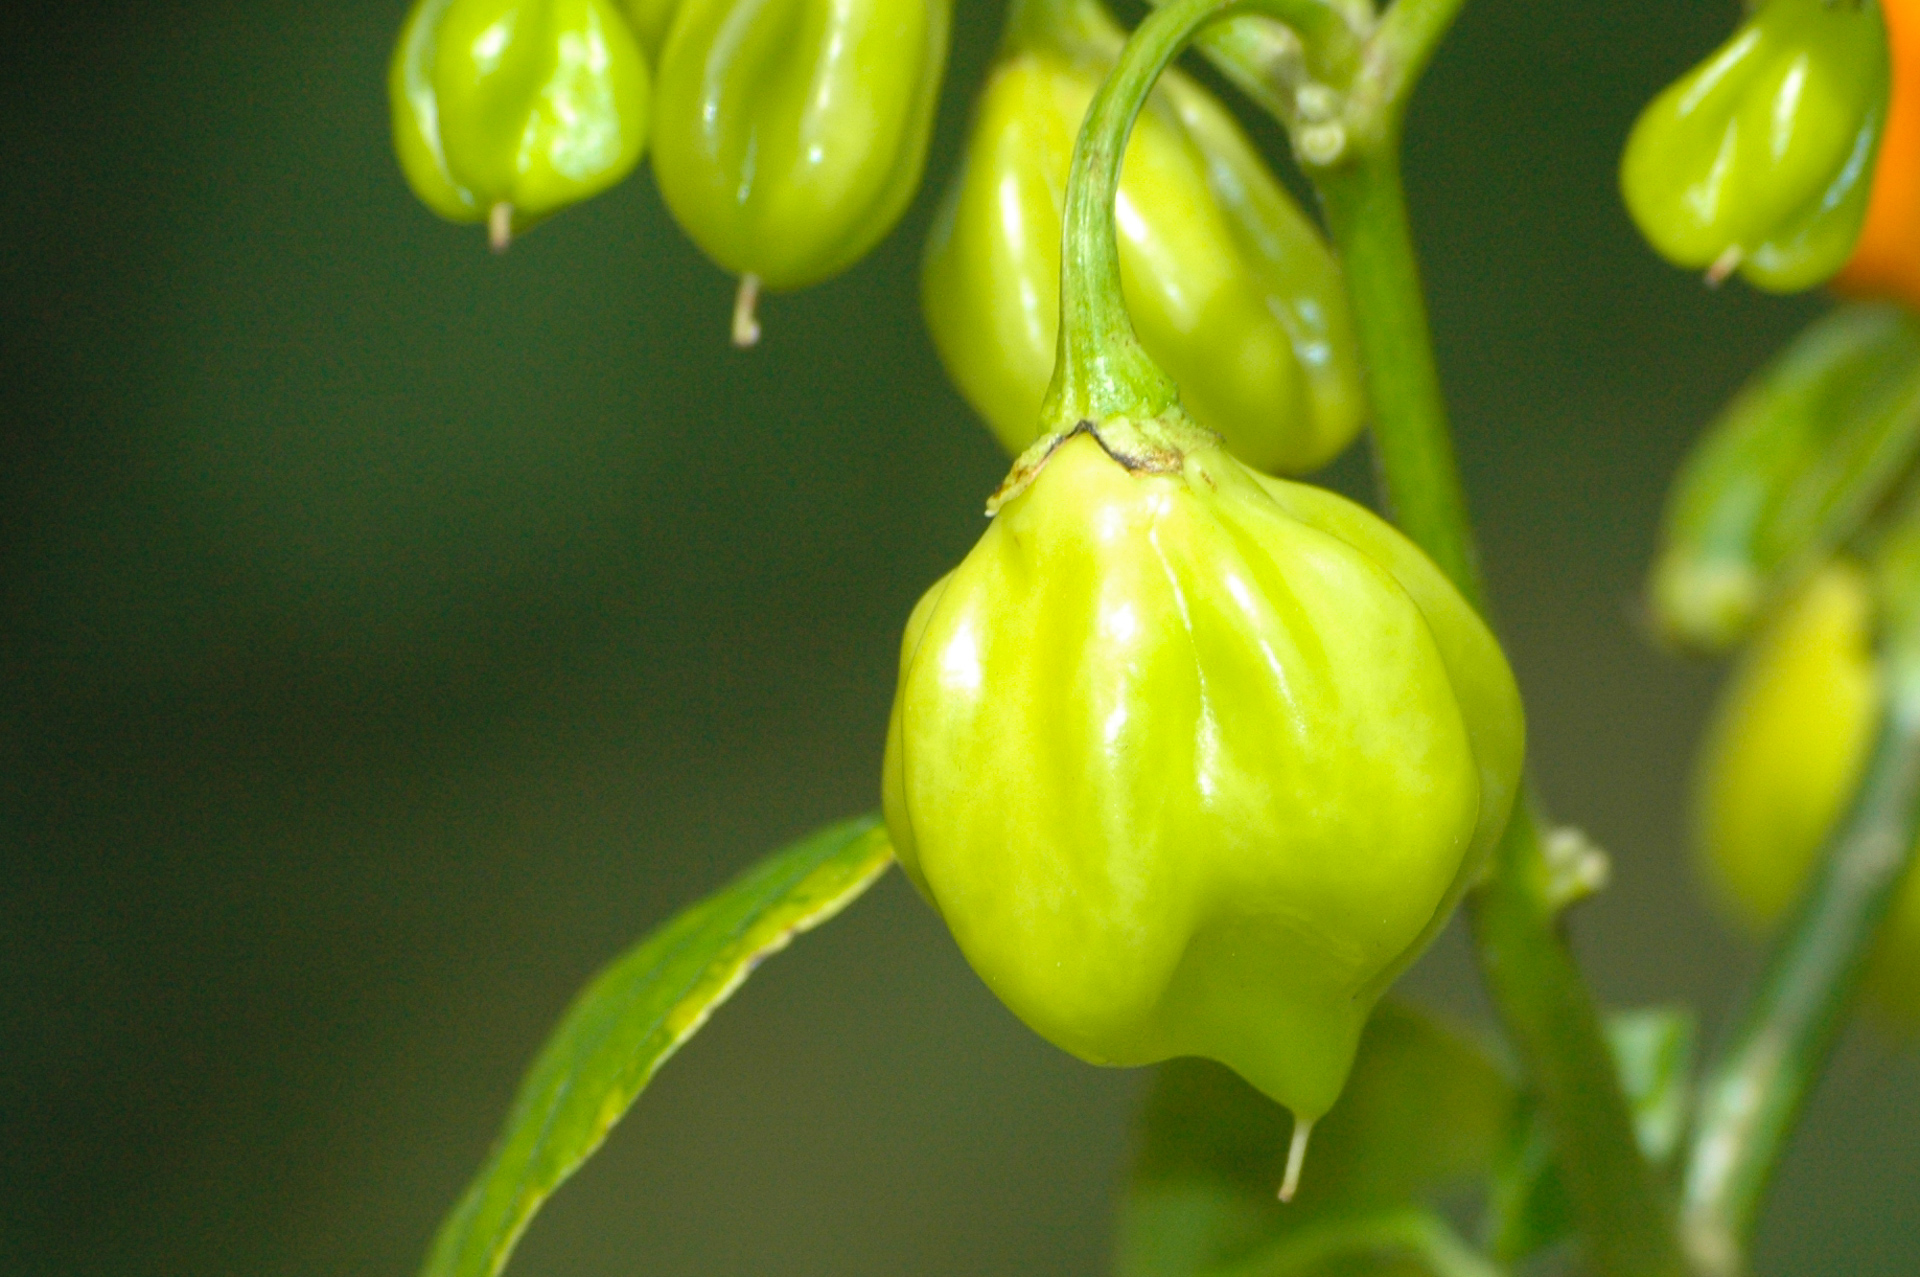 PI 257138 - Capsicum chinense - Chilisorte